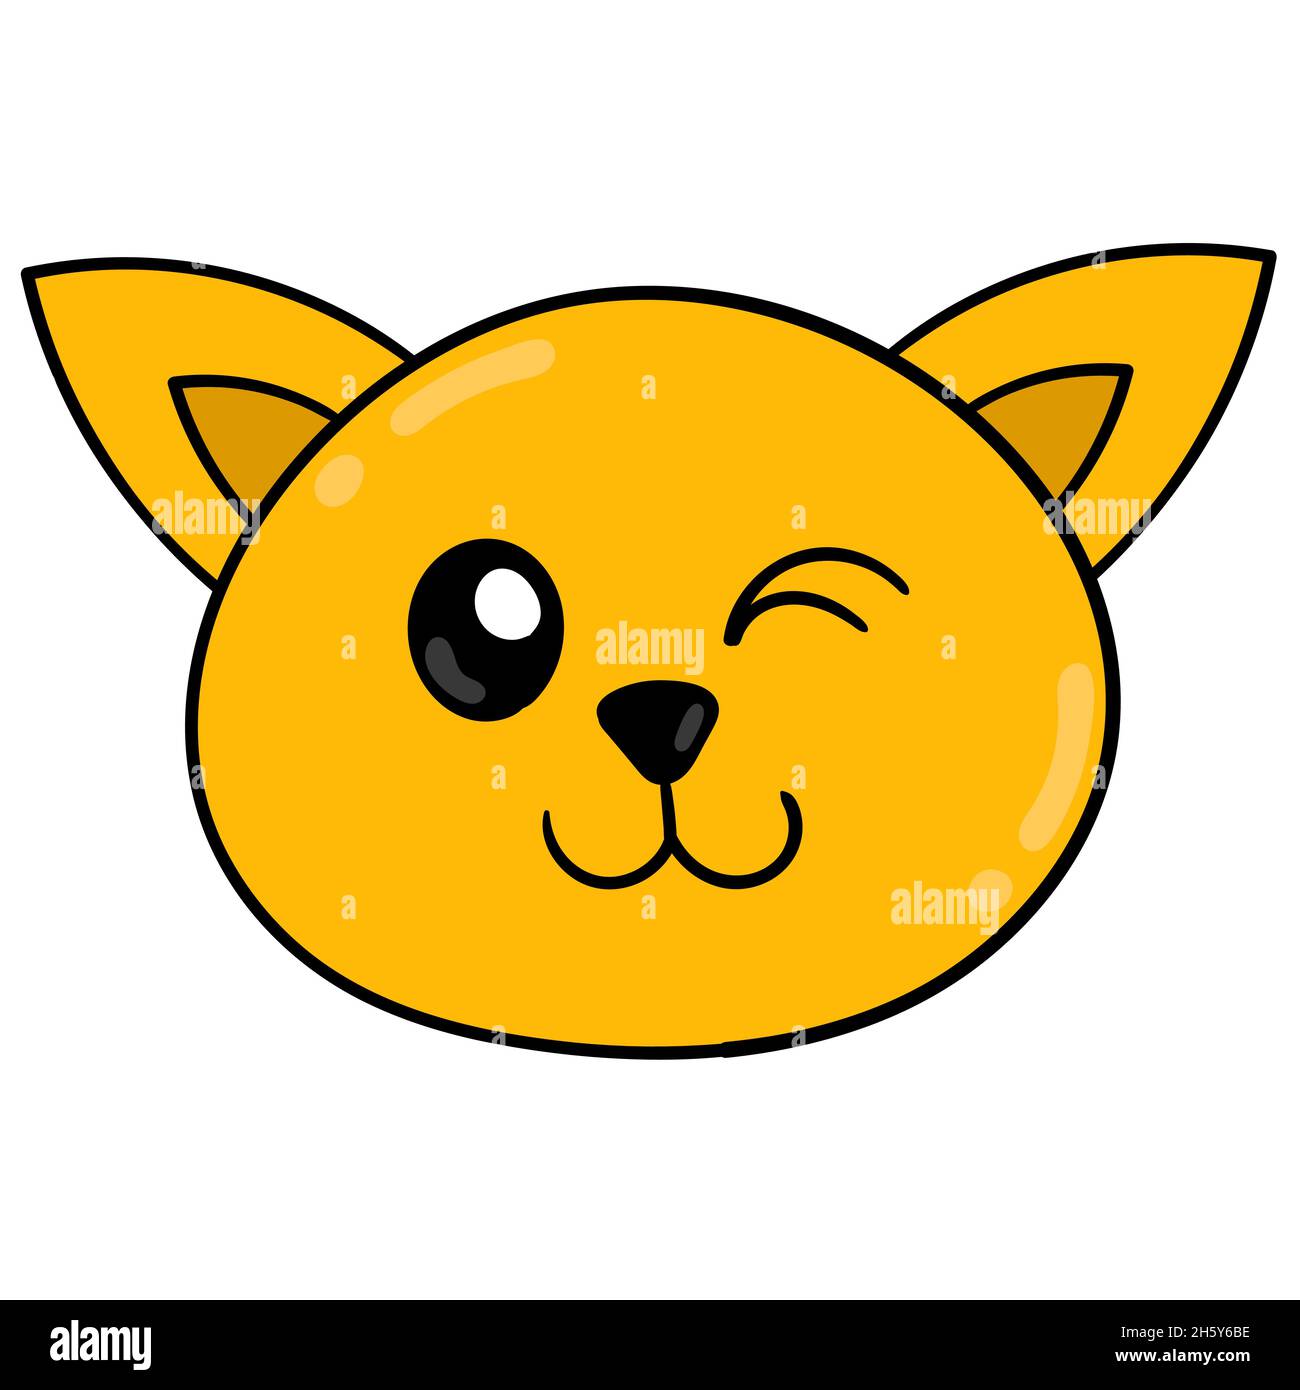 smile yellow kitten head Stock Vector Image & Art - Alamy